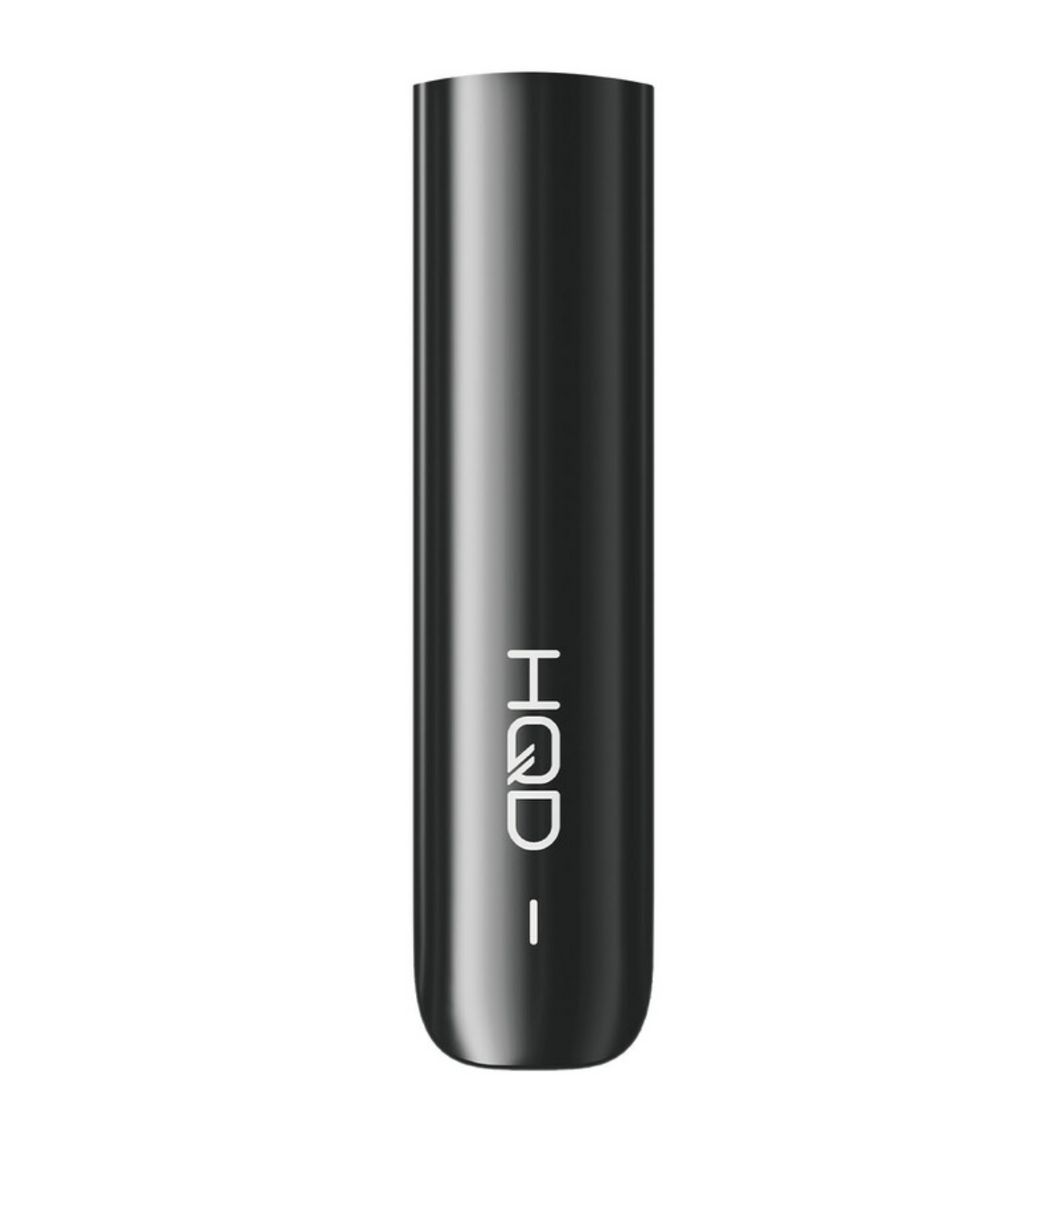 HQD Cirak Pod - nachfüllbare E-Zigarette in allen Farben und Geschmackssorten